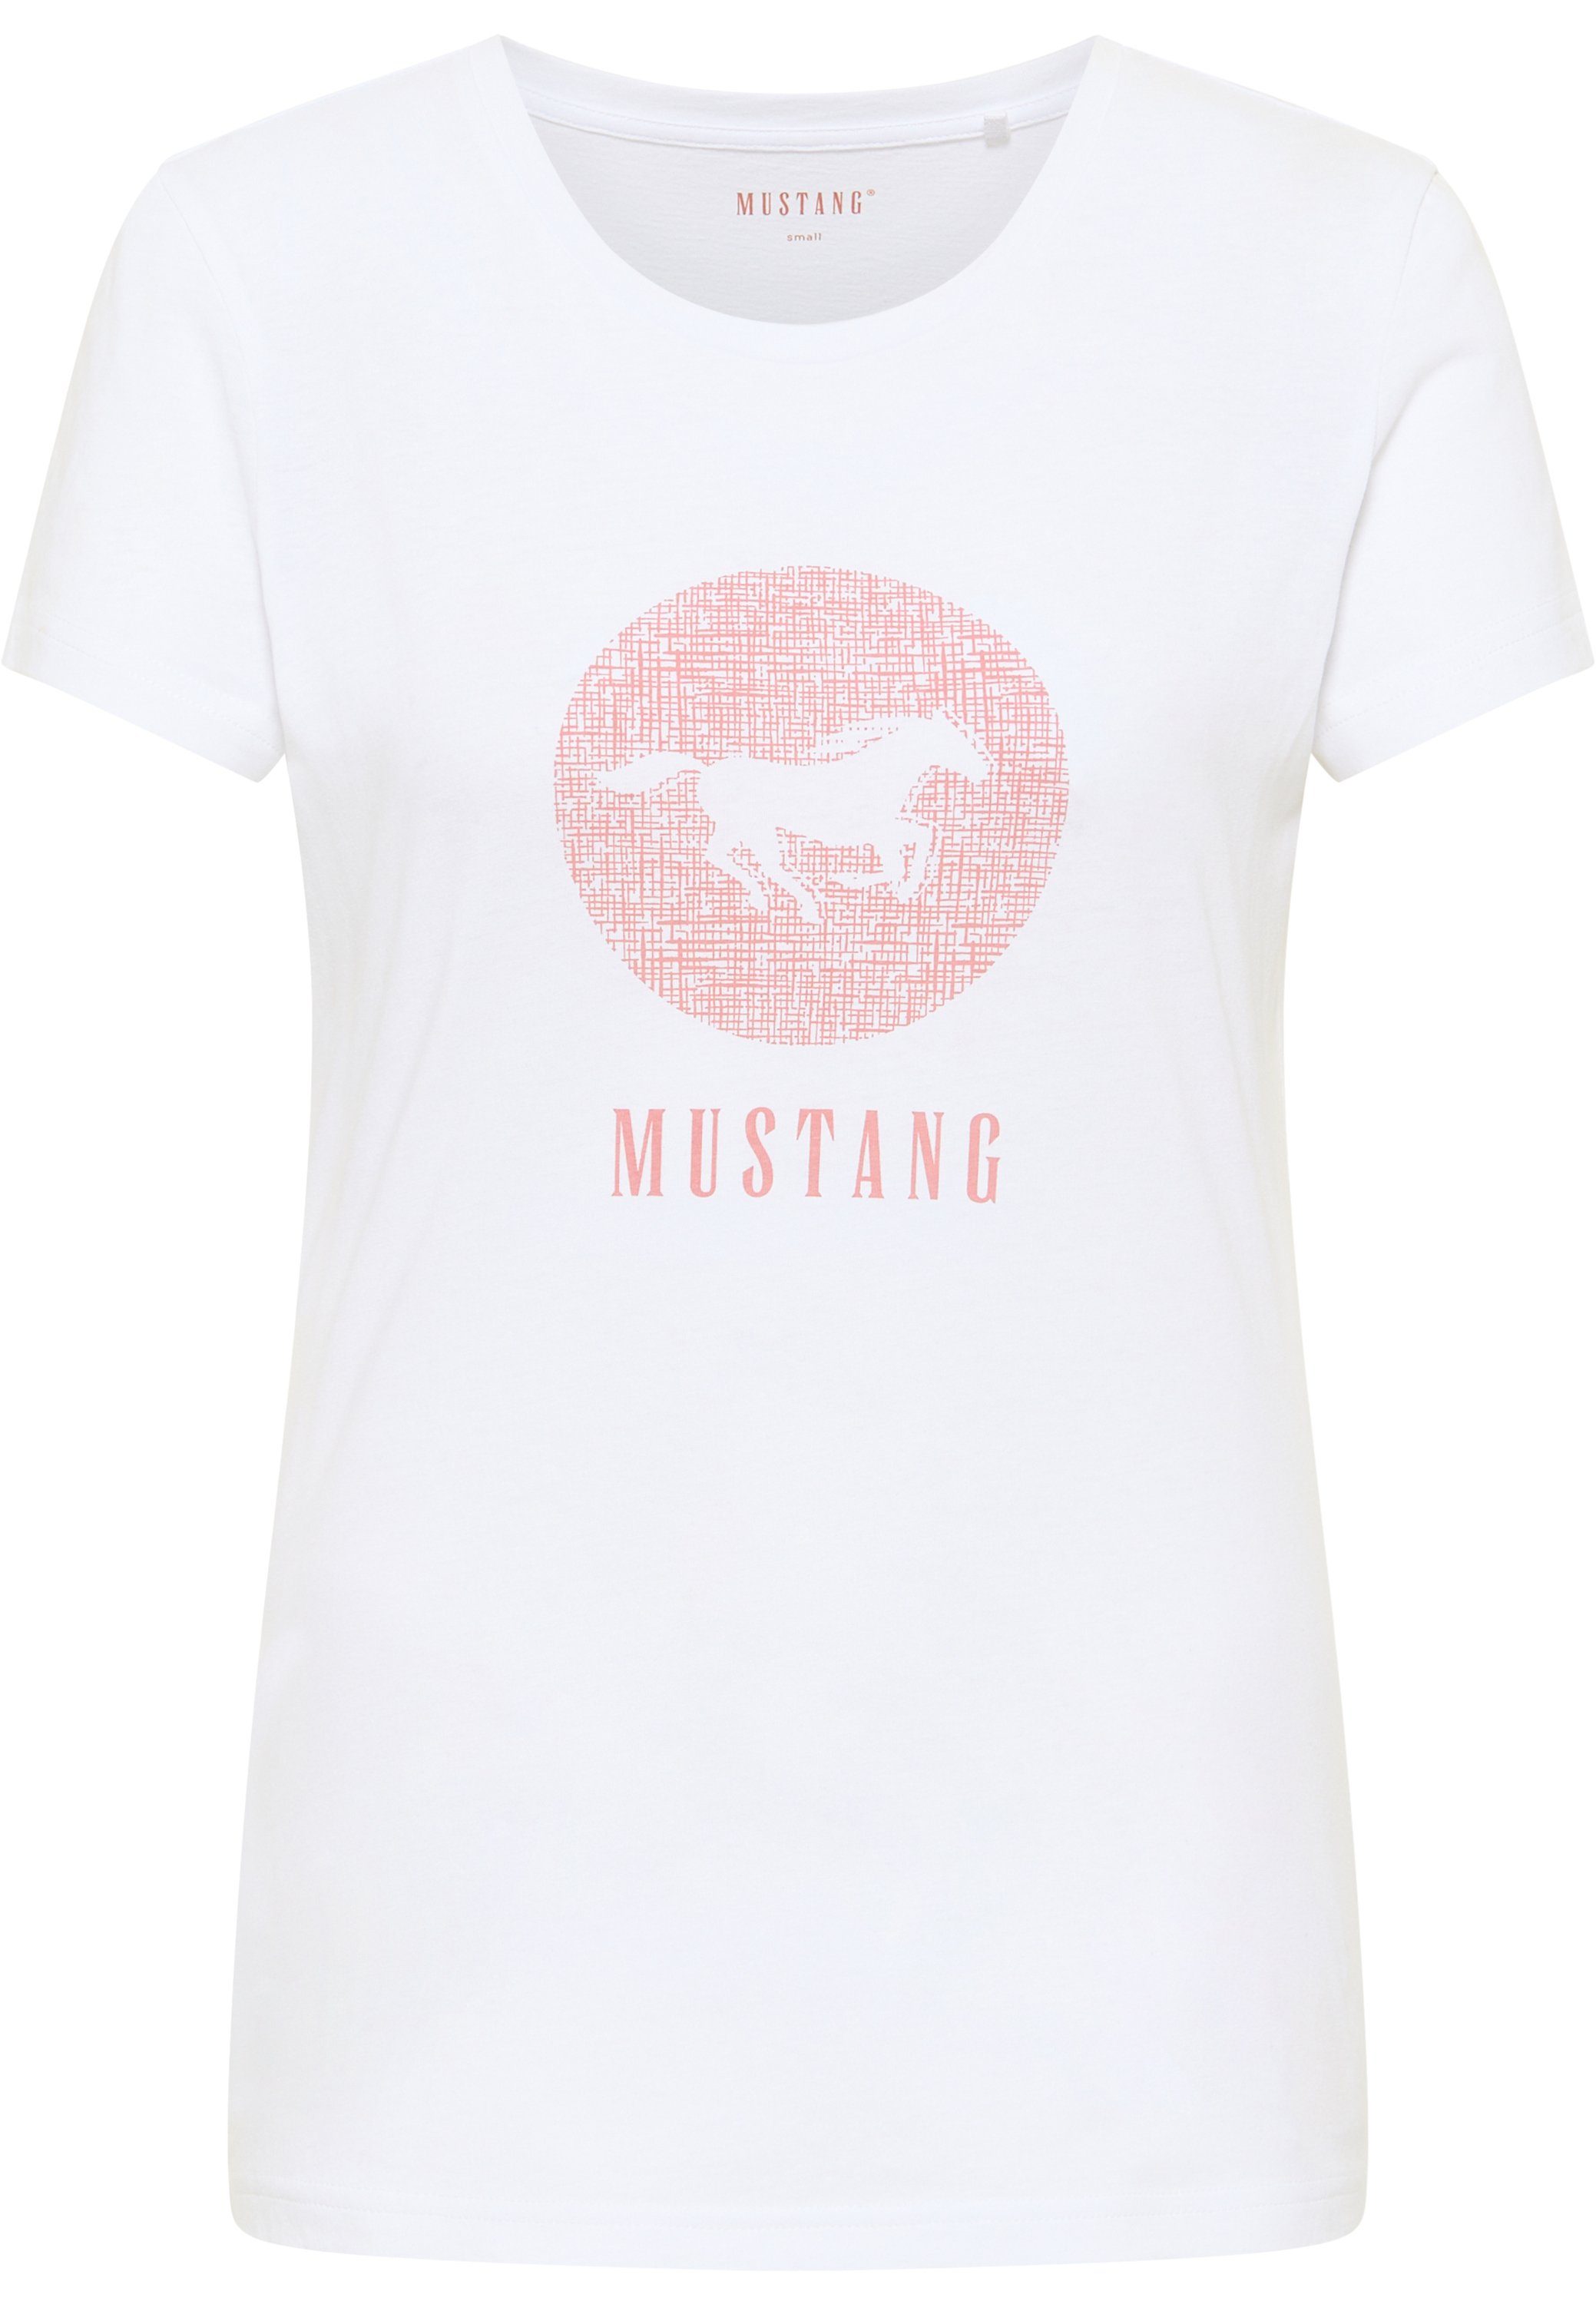 Print-Shirt weiß Kurzarmshirt Mustang MUSTANG T-Shirt